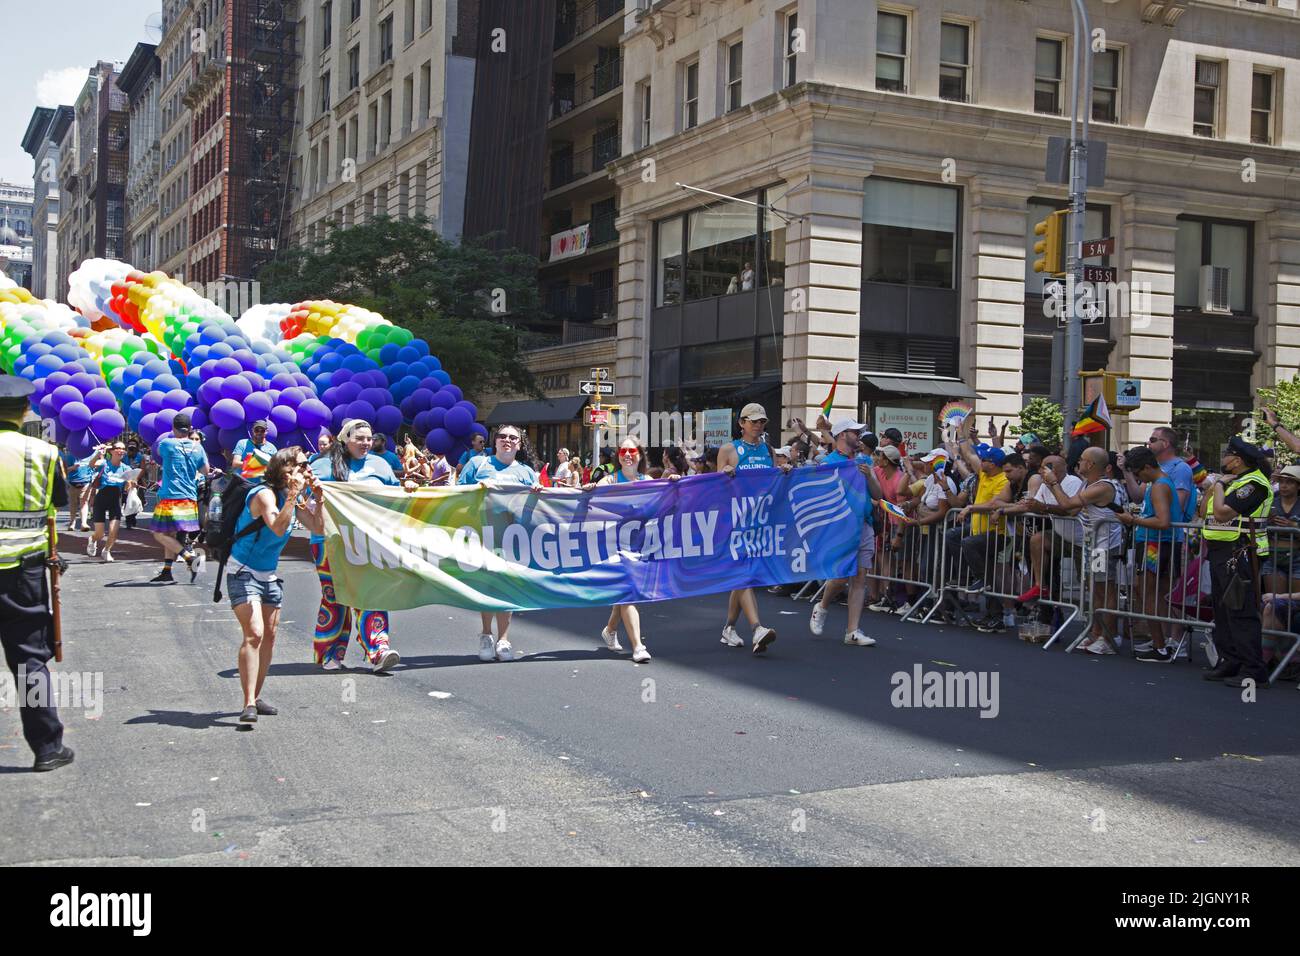 Le défilé annuel gay Pride revient en mars sur 5th Avenue et se termine sur Christopher Street dans Greenwich Village après une pause de 3 ans en raison de la pandémie Covid-19. La parade commence par une vague de ballons arc-en-ciel sur 5th Avenue. Banque D'Images